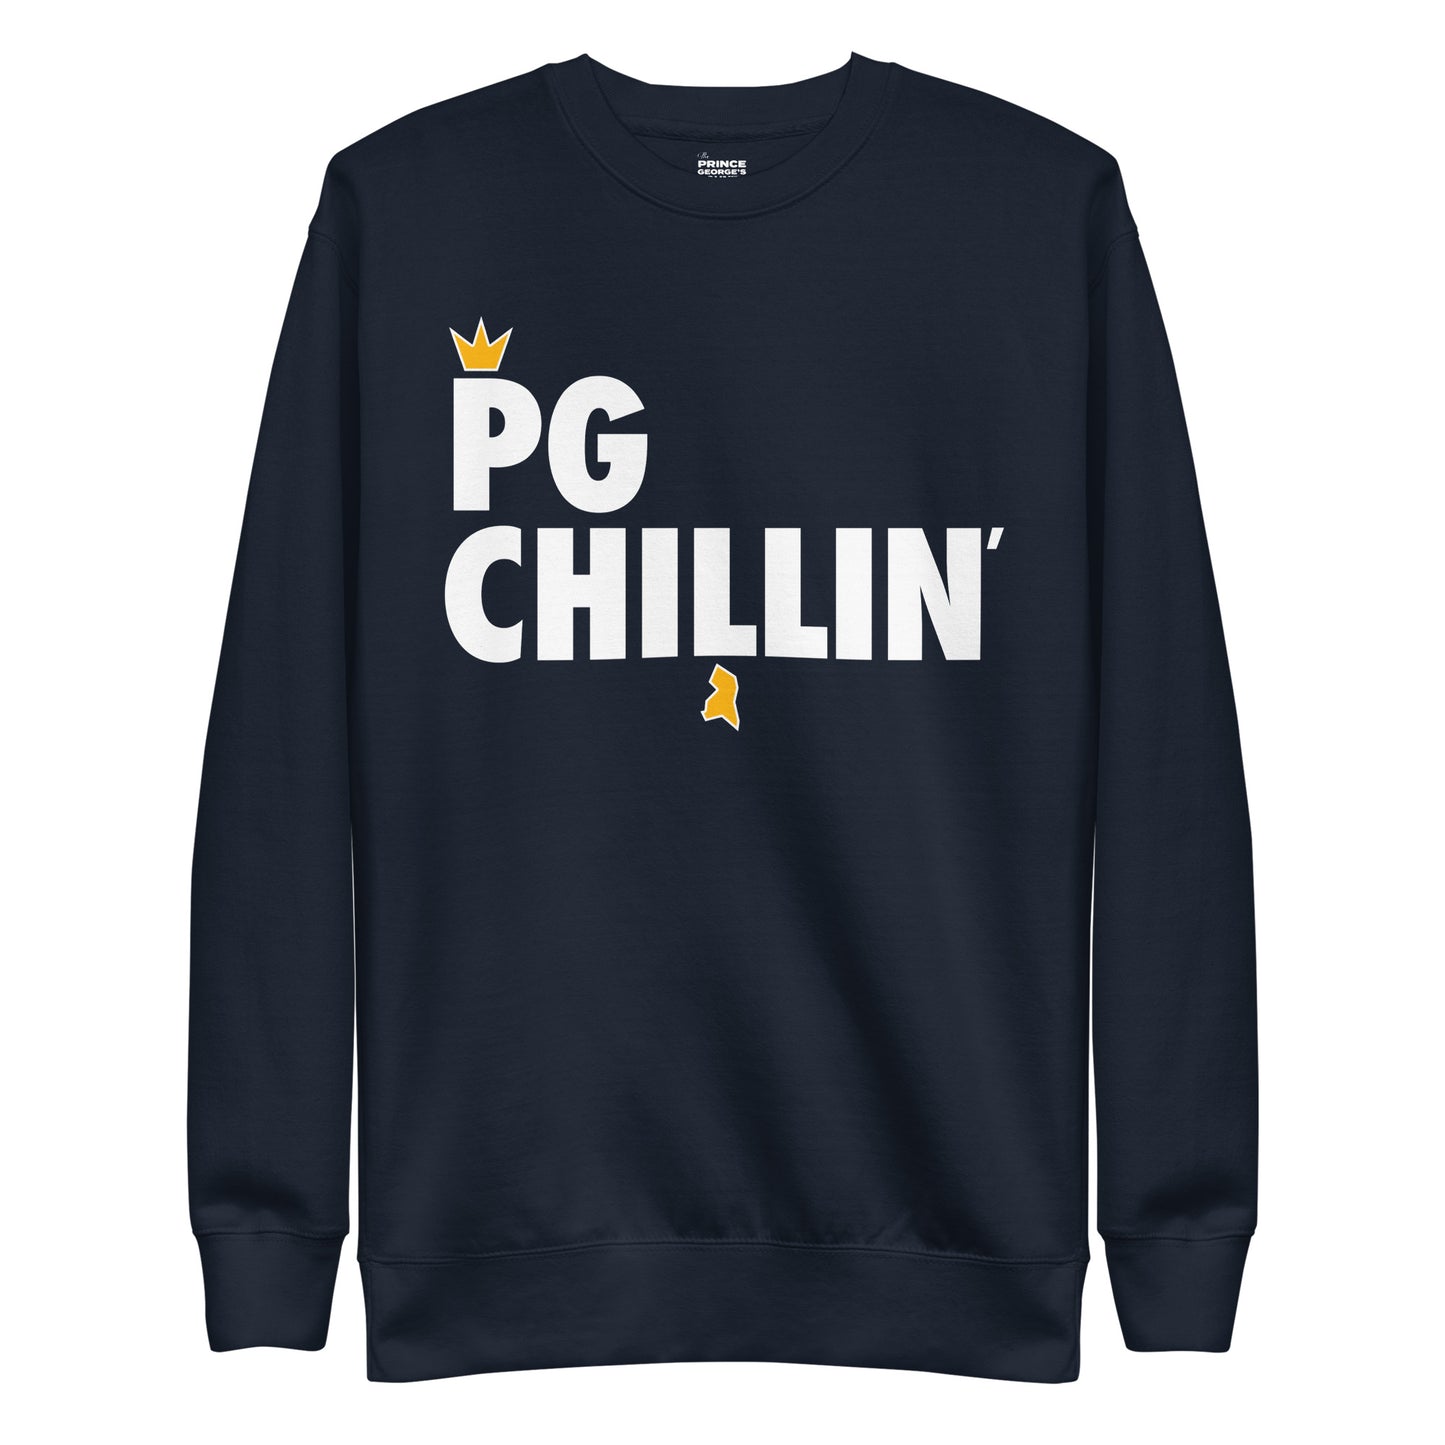 PG CHILLIN' Unisex Premium Sweatshirt